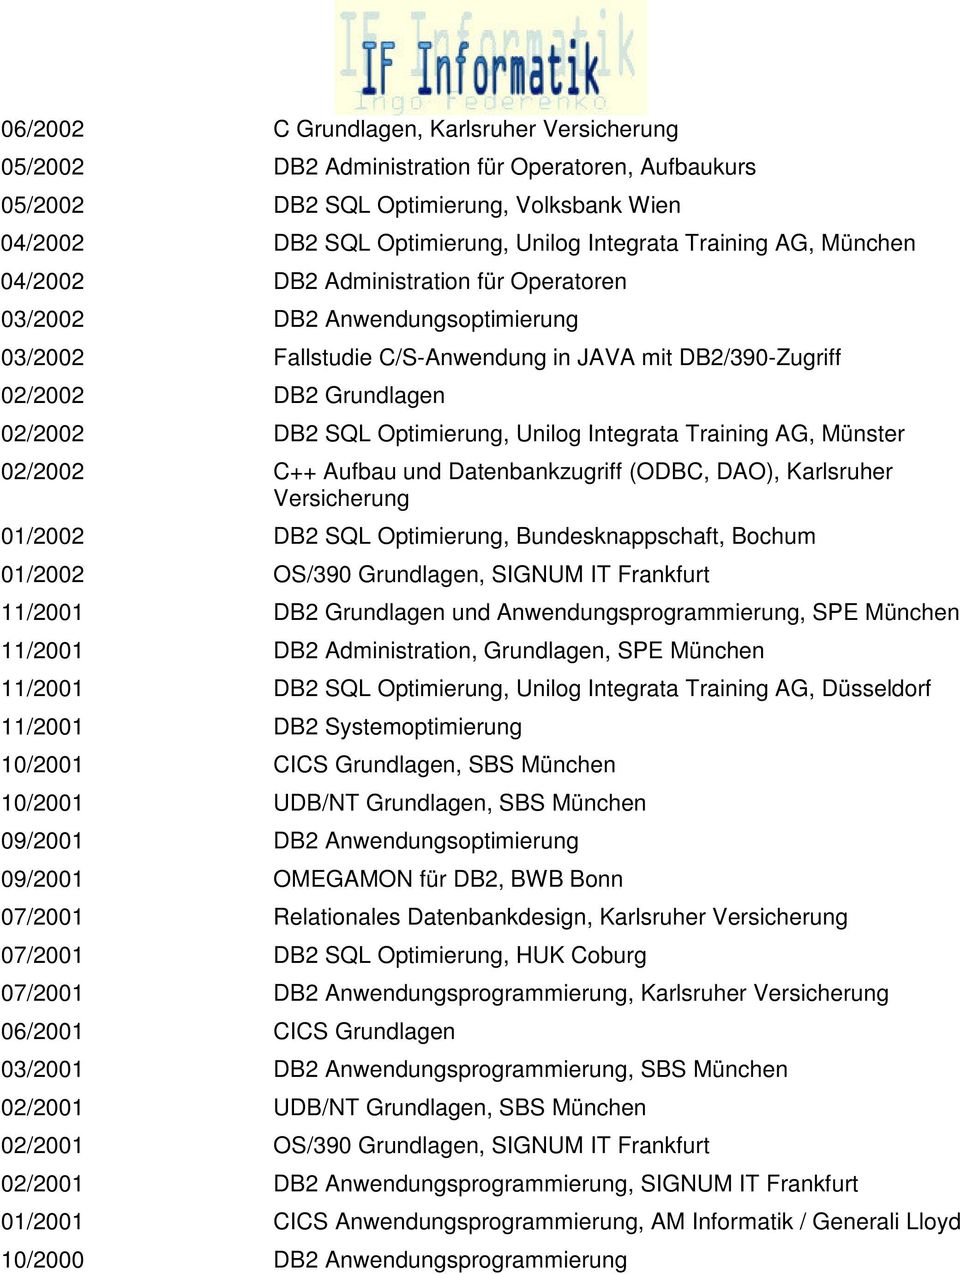 Optimierung, Unilog Integrata Training AG, Münster 02/2002 C++ Aufbau und Datenbankzugriff (ODBC, DAO), Karlsruher Versicherung 01/2002 DB2 SQL Optimierung, Bundesknappschaft, Bochum 01/2002 OS/390